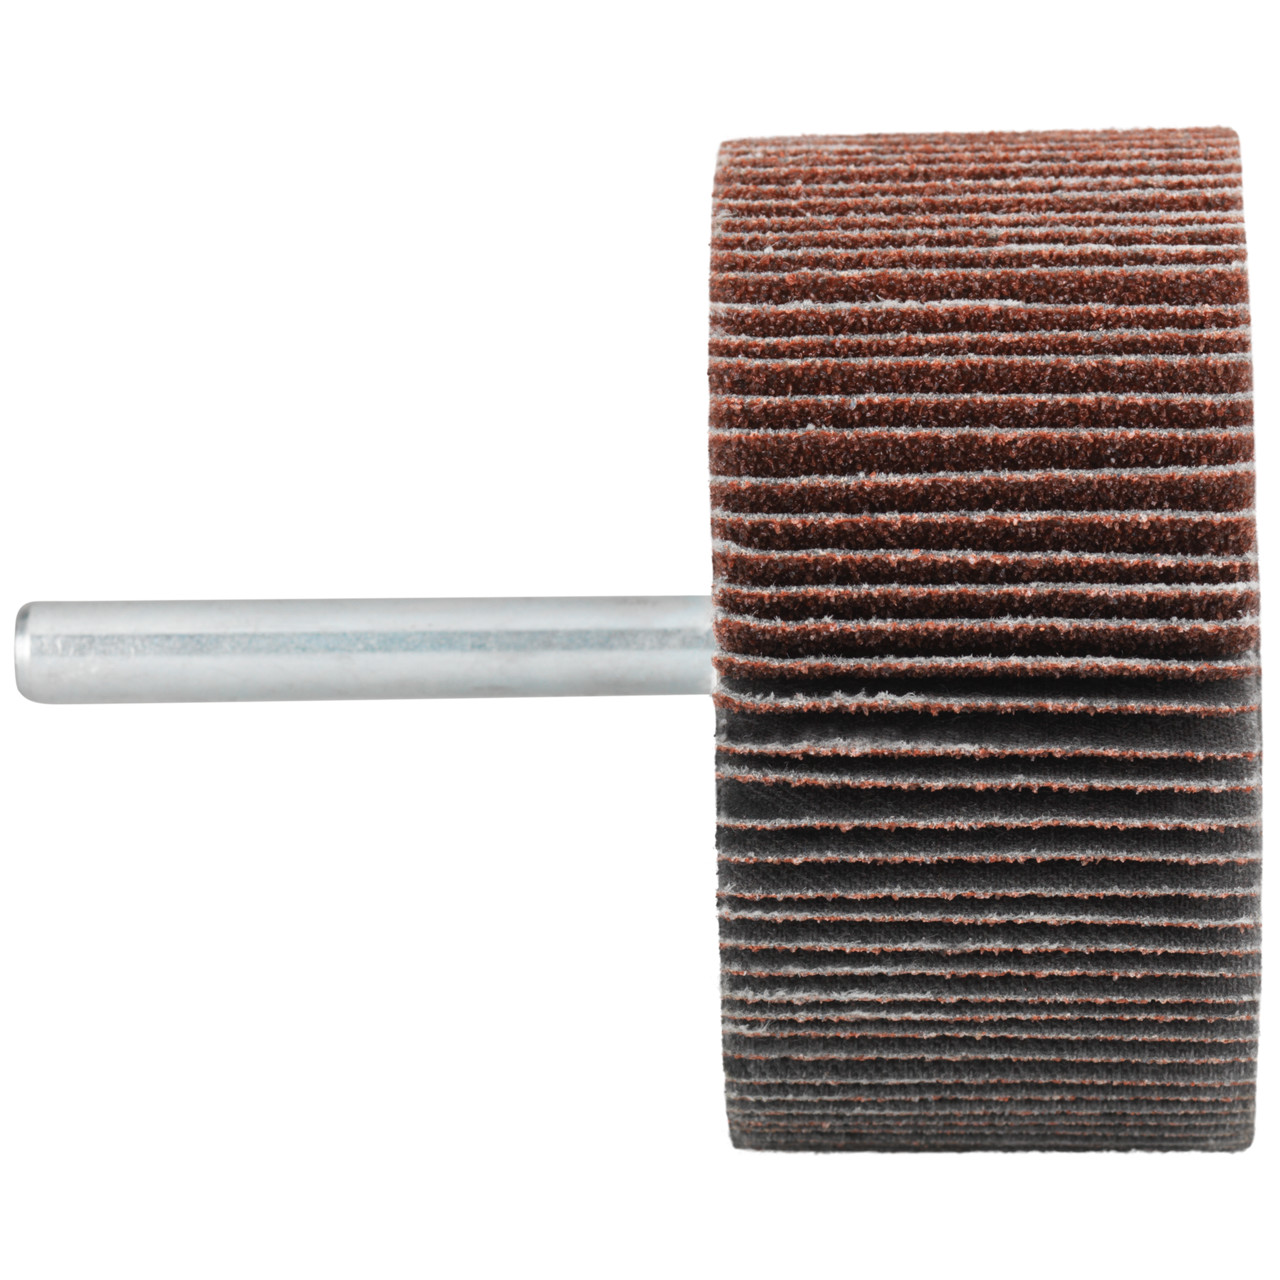 Tyrolit A-P01 C X Pennen DxD 60x30 Voor staal, roestvast staal en non-ferrometalen, P150, vorm: 52LA, Art. 816962